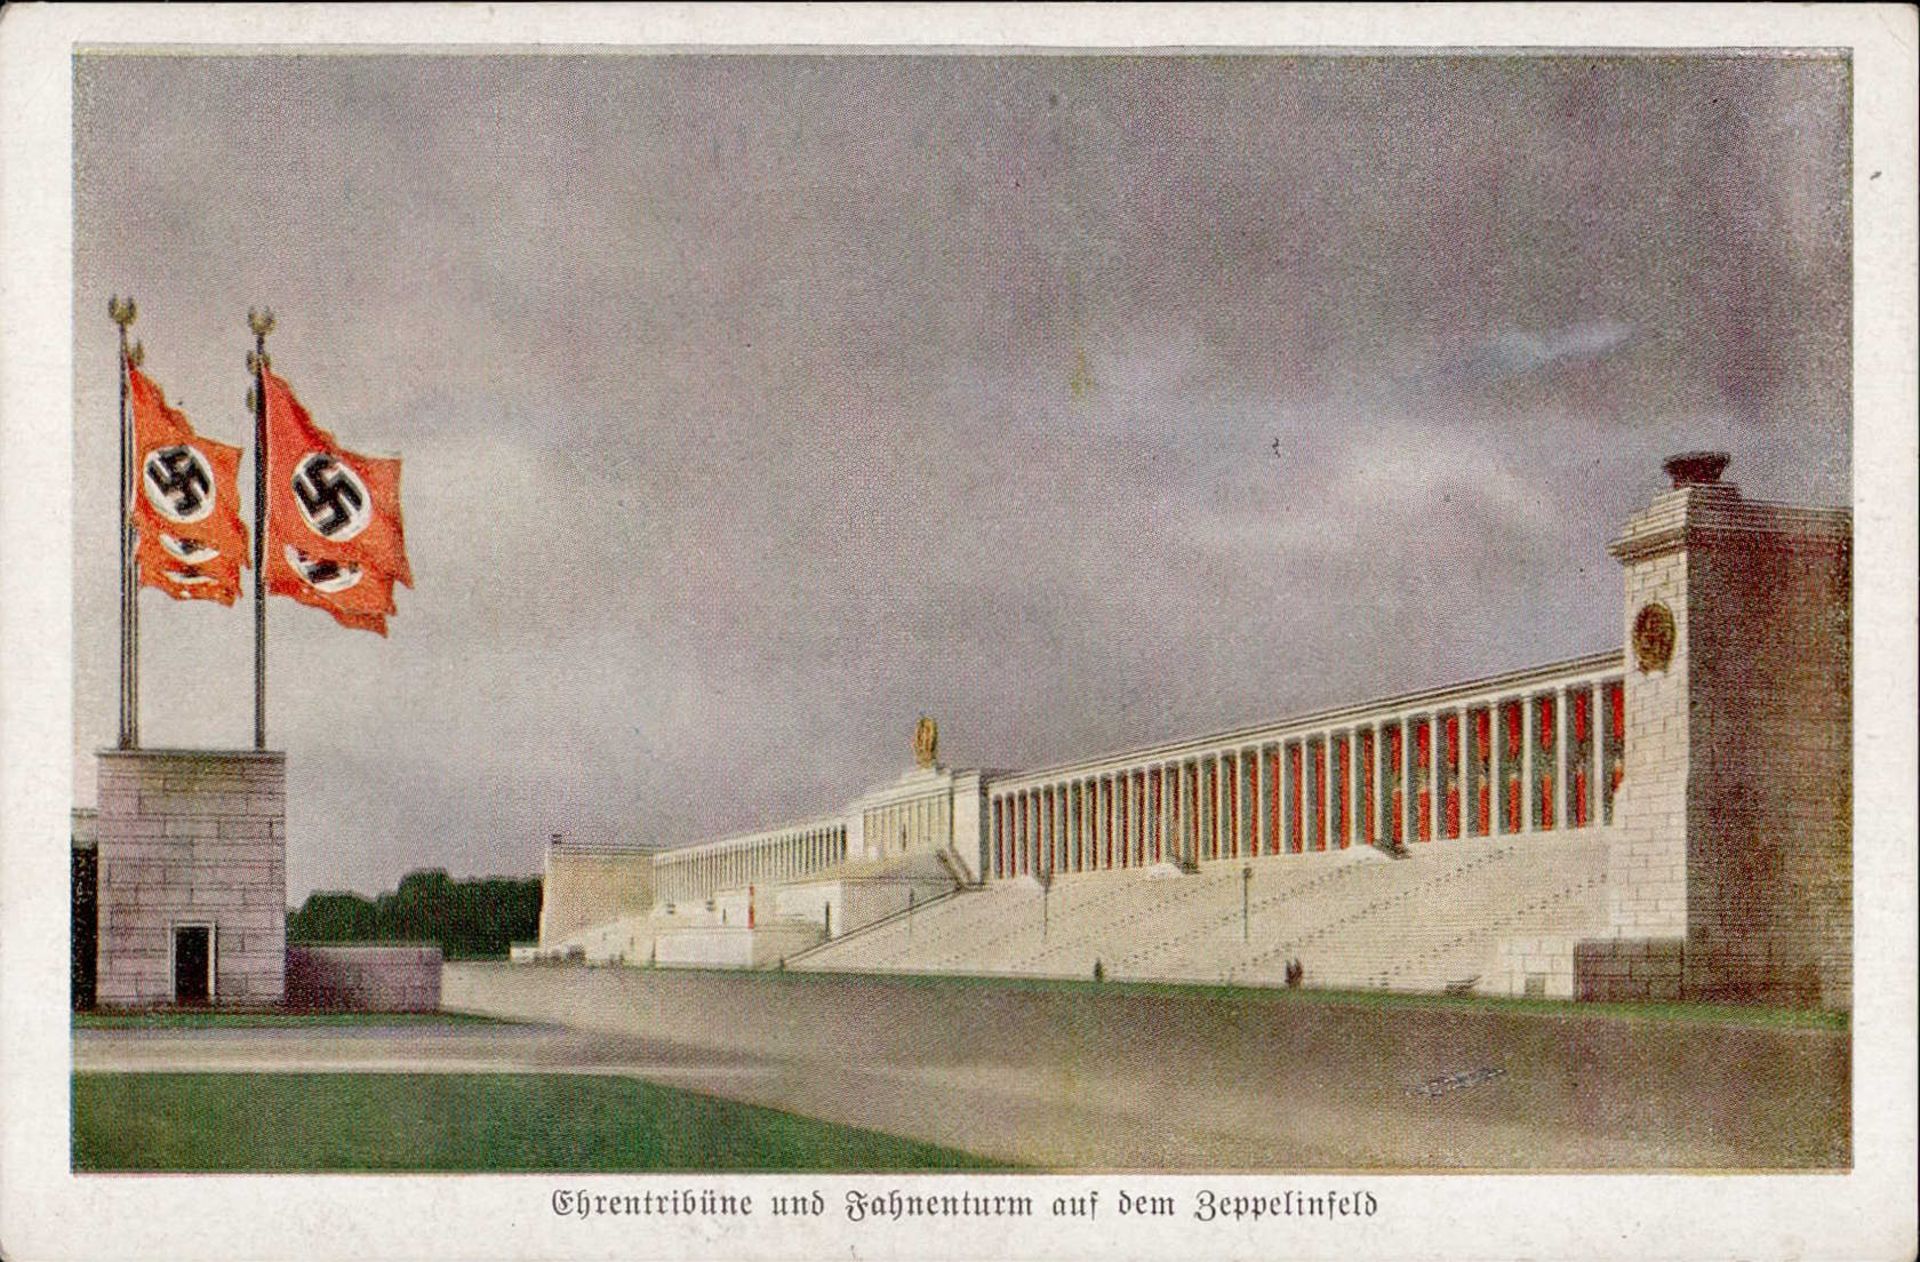 REICHSPARTEITAG NÜRNBERG WK II - Verlag König 1025 Ehrentribühne und Fahnenturm auf dem Zeppelinfeld